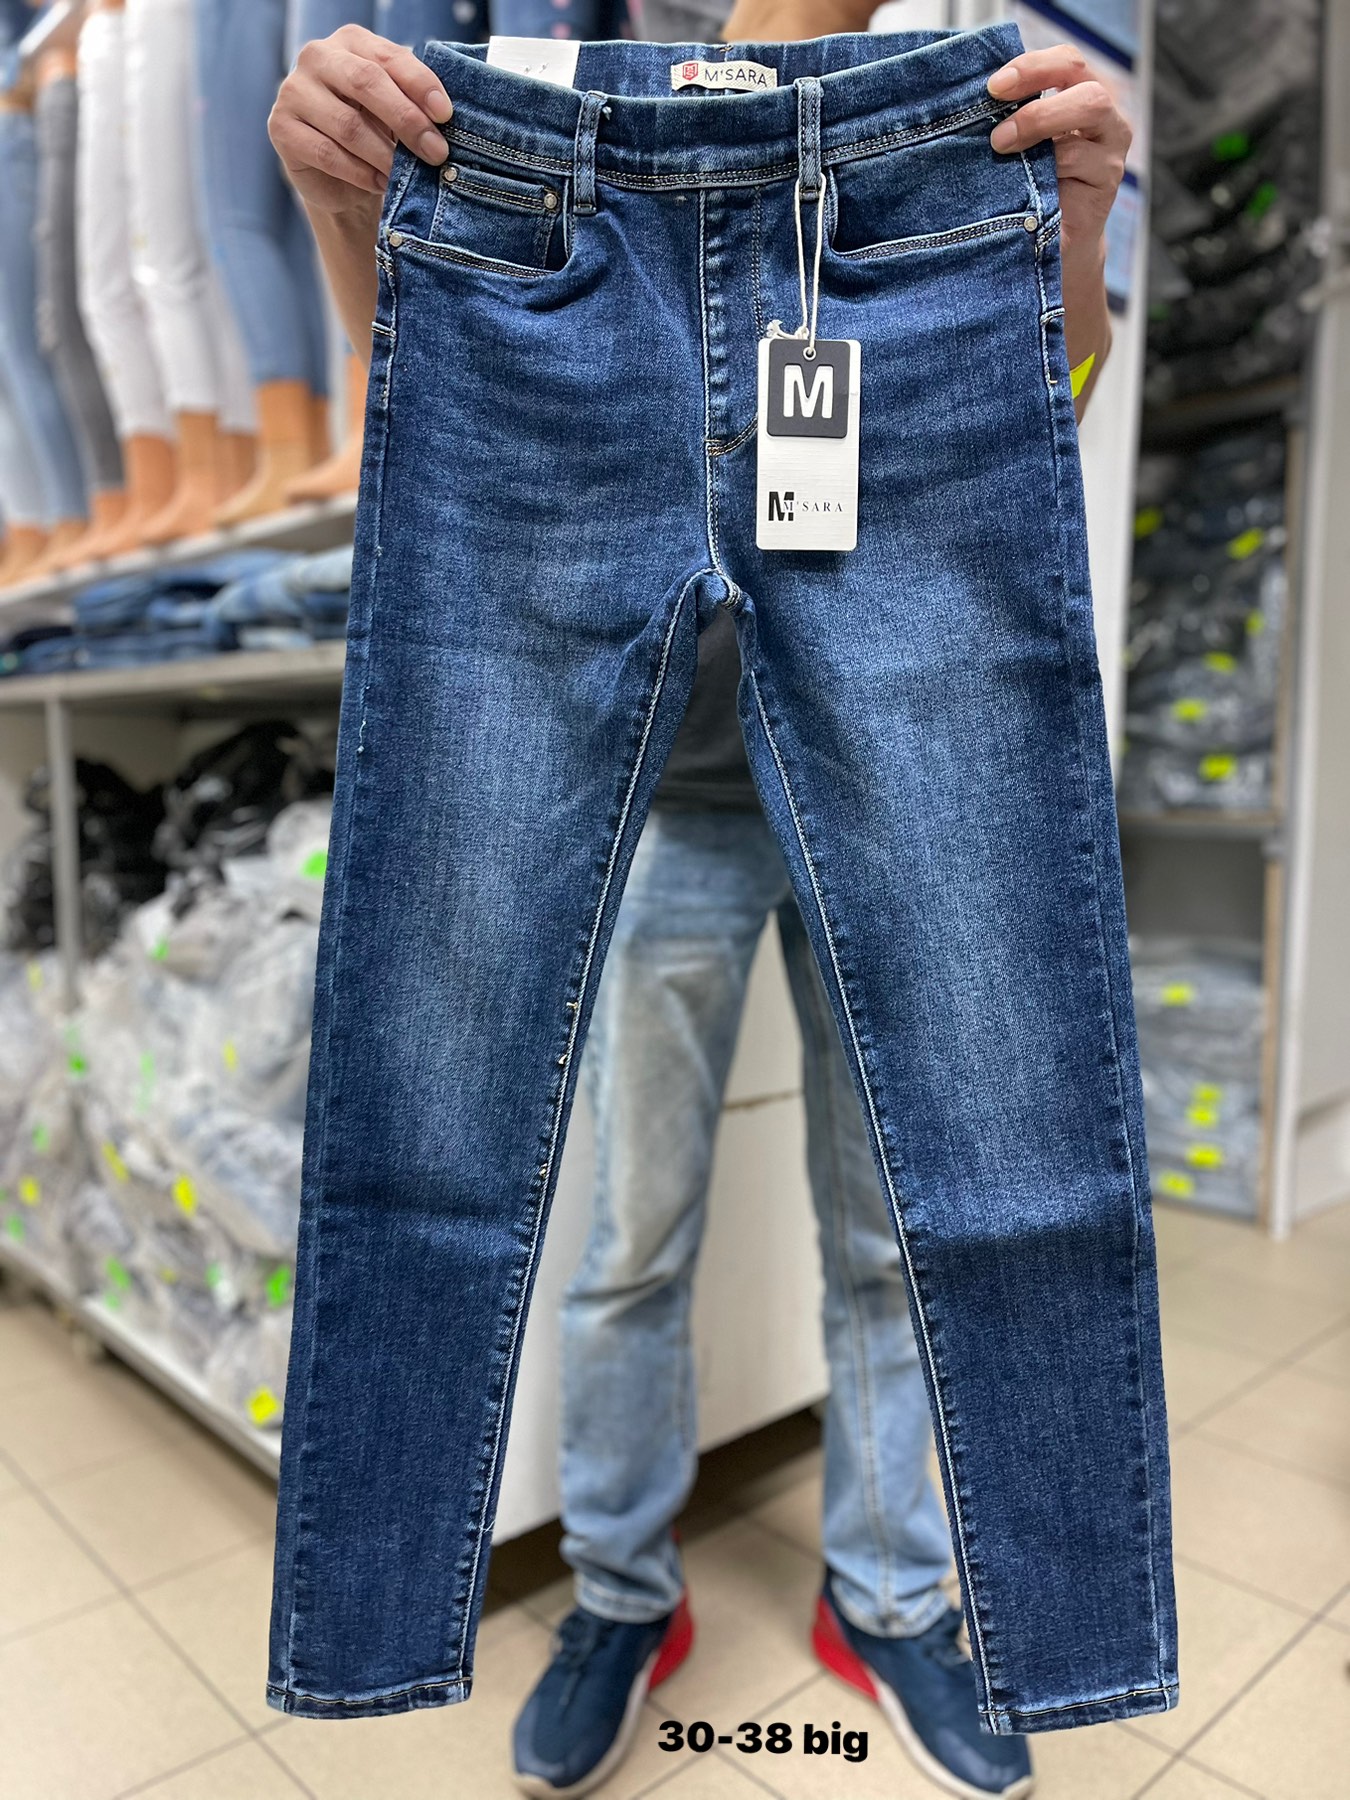 Spodnie damskie jeans Roz 30-38. 1 kolor .  Paczka 10szt